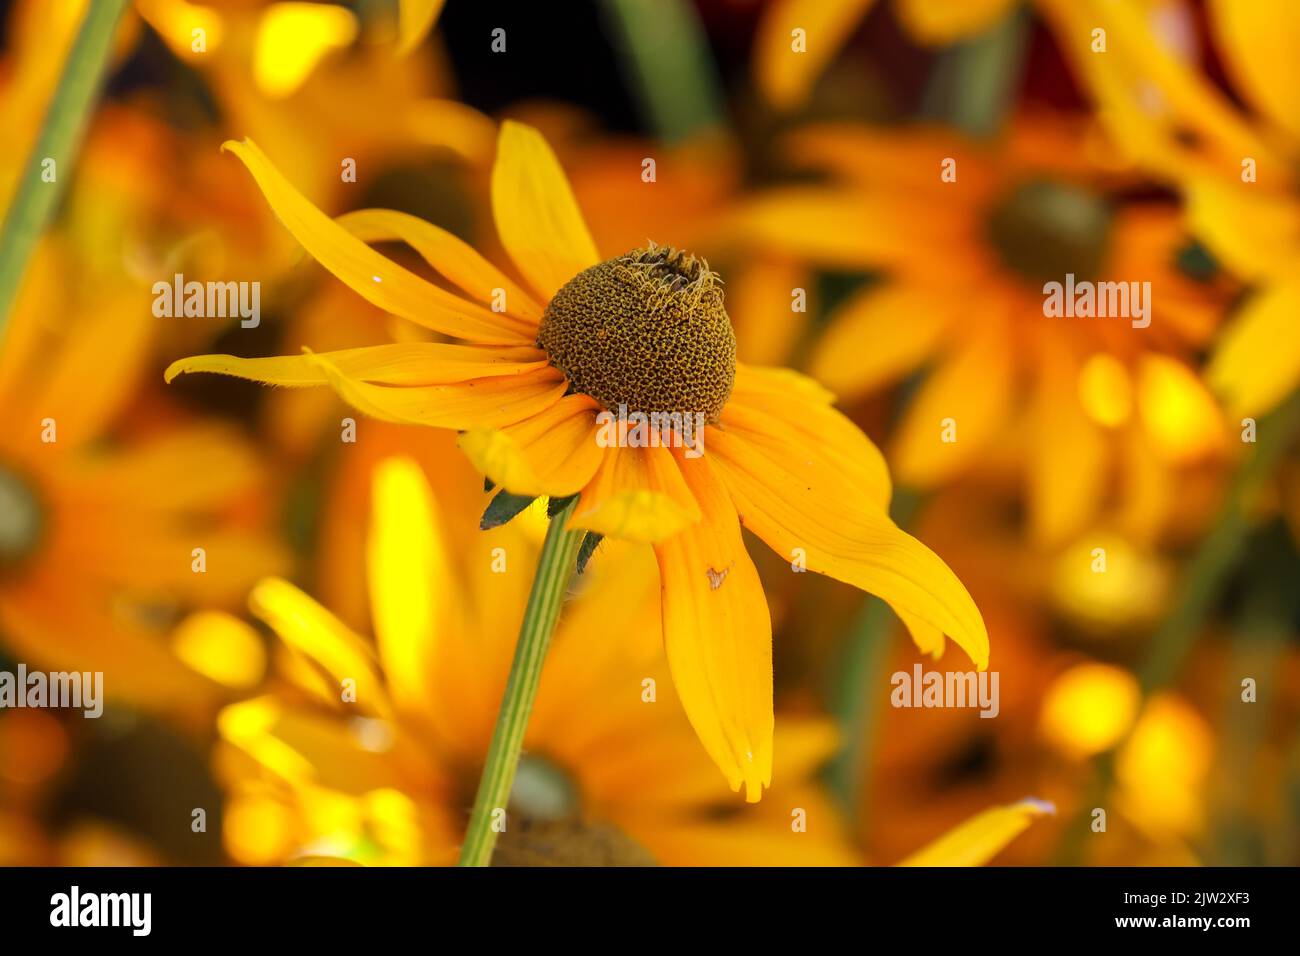 Fleurs jaunes vives, 'Rudbeckia hirta', 'Irish Eyes' ou 'Black Eyed Susan' , concentration sélective sur une fleur isolée. Dublin, Irlande Banque D'Images